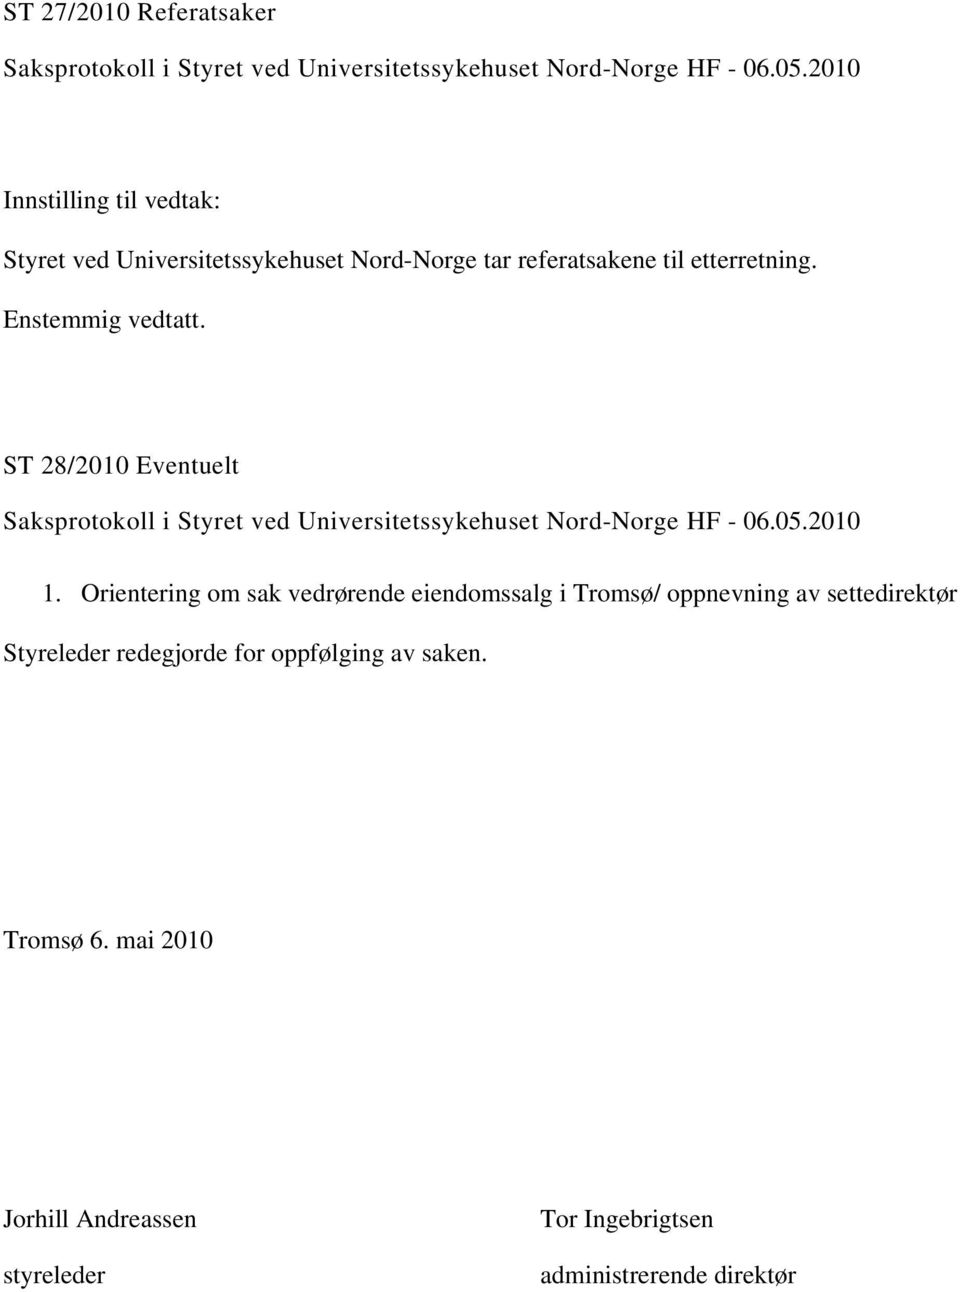 Orientering om sak vedrørende eiendomssalg i Tromsø/ oppnevning av settedirektør